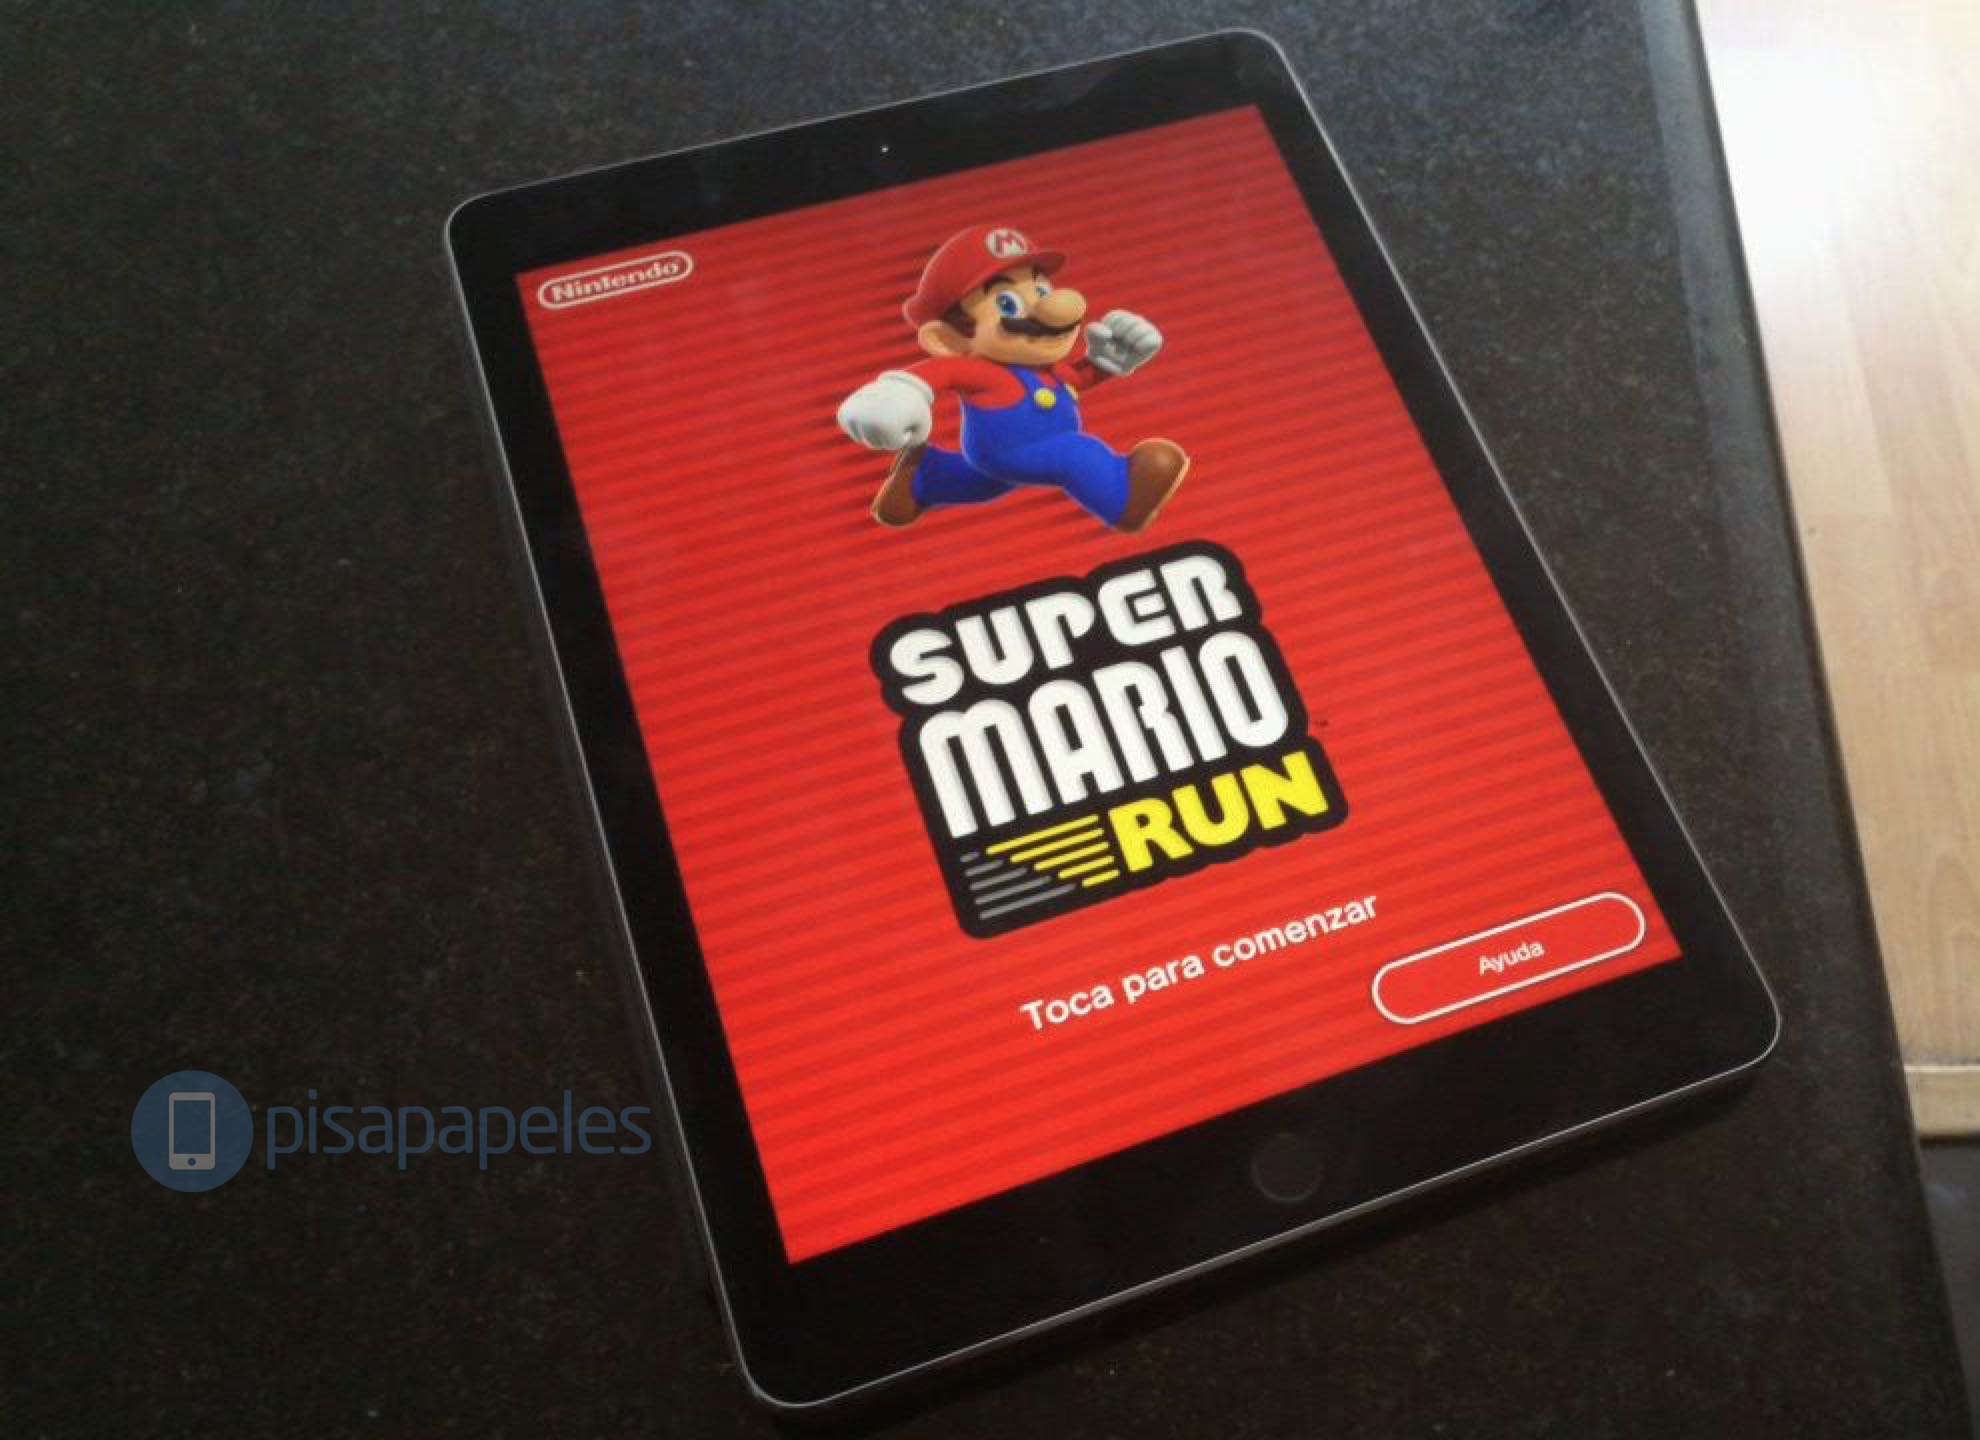 Super Mario Run, Nintendo отлично подходит для iPhone 1